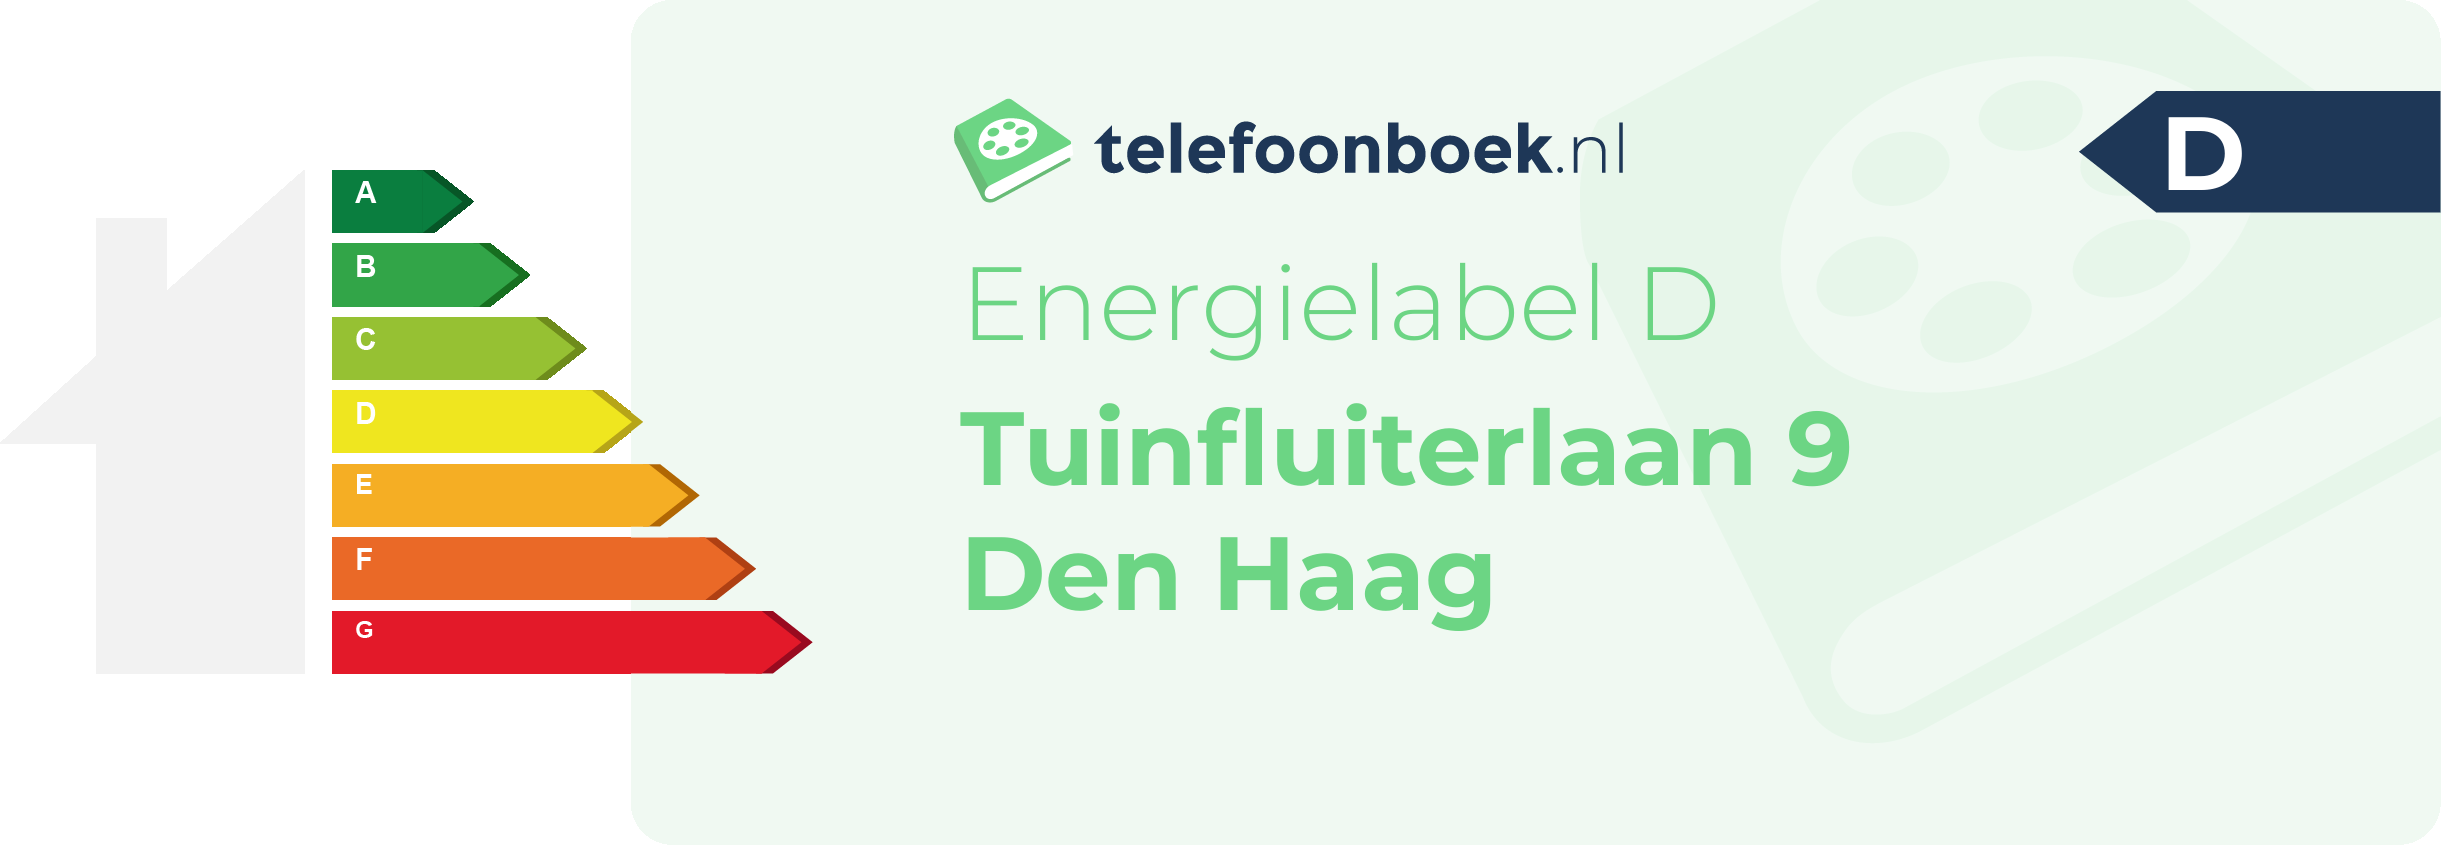 Energielabel Tuinfluiterlaan 9 Den Haag